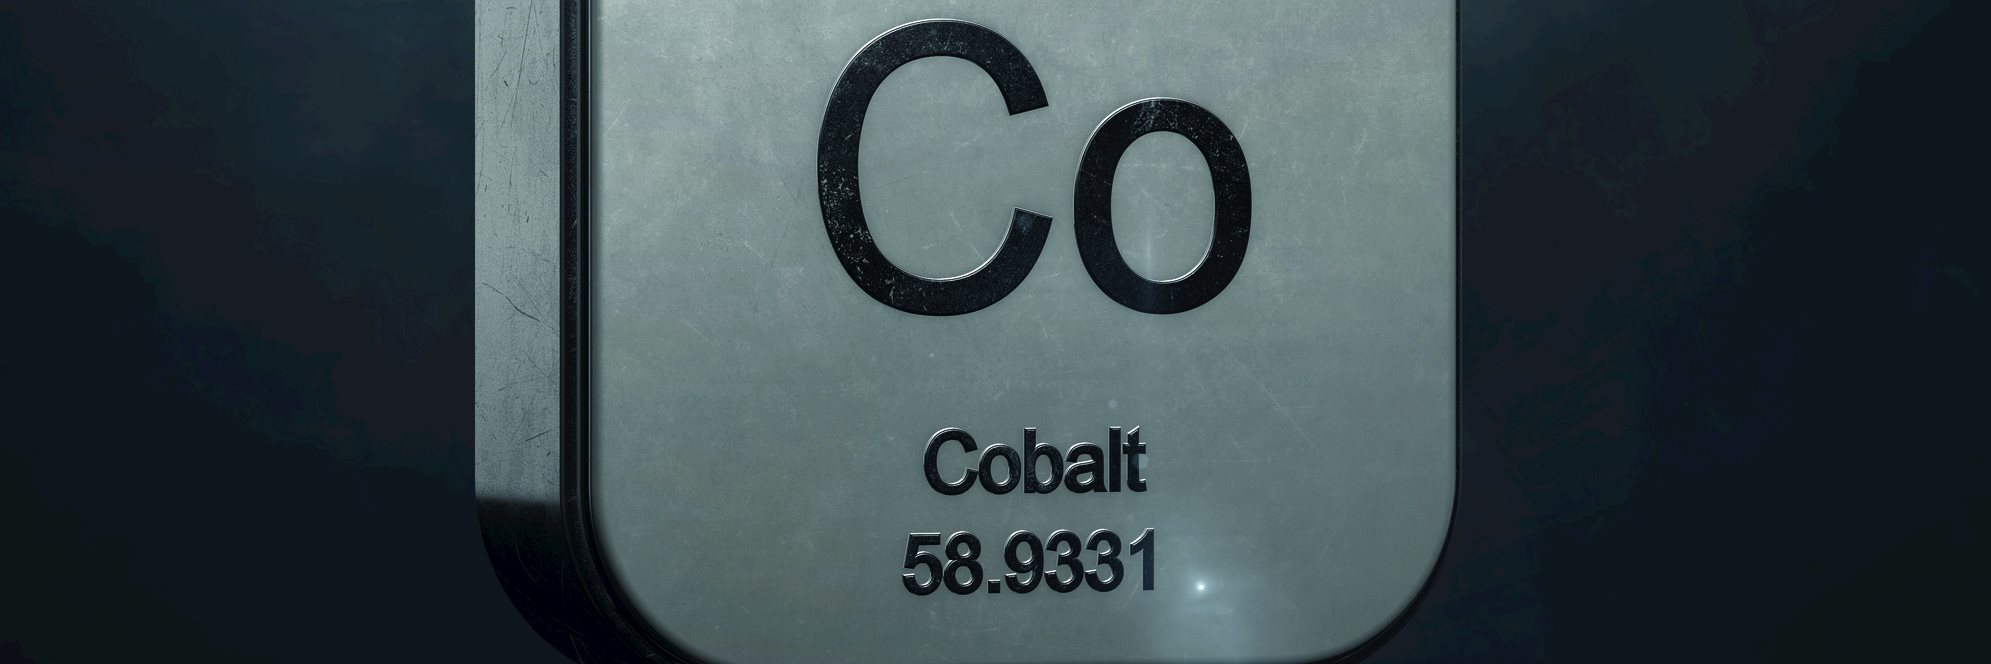 Cobalt Study